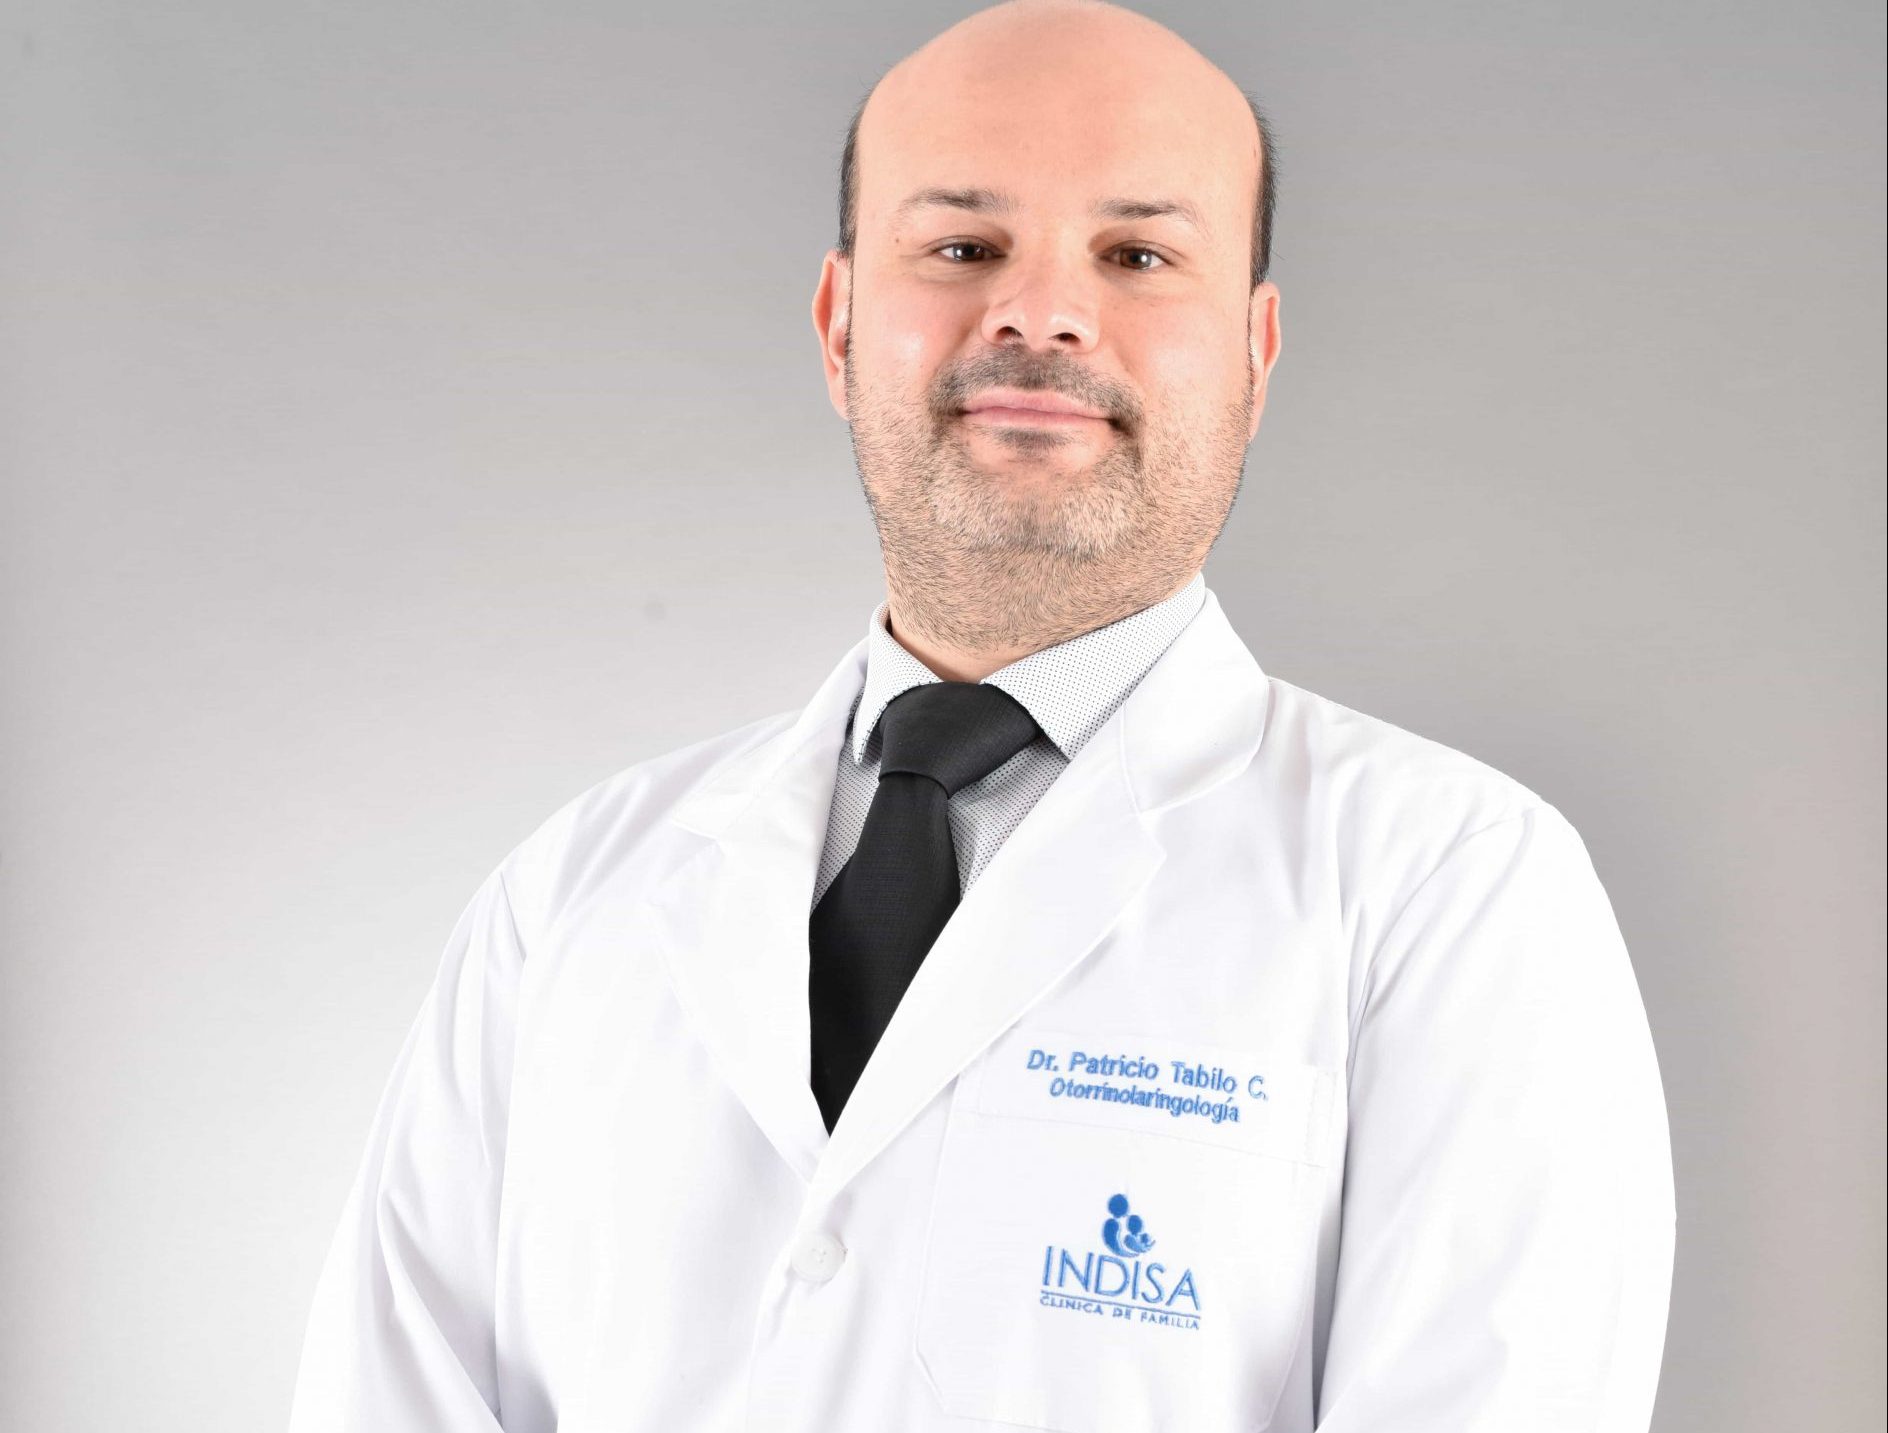 Dr. Patricio Tabilo